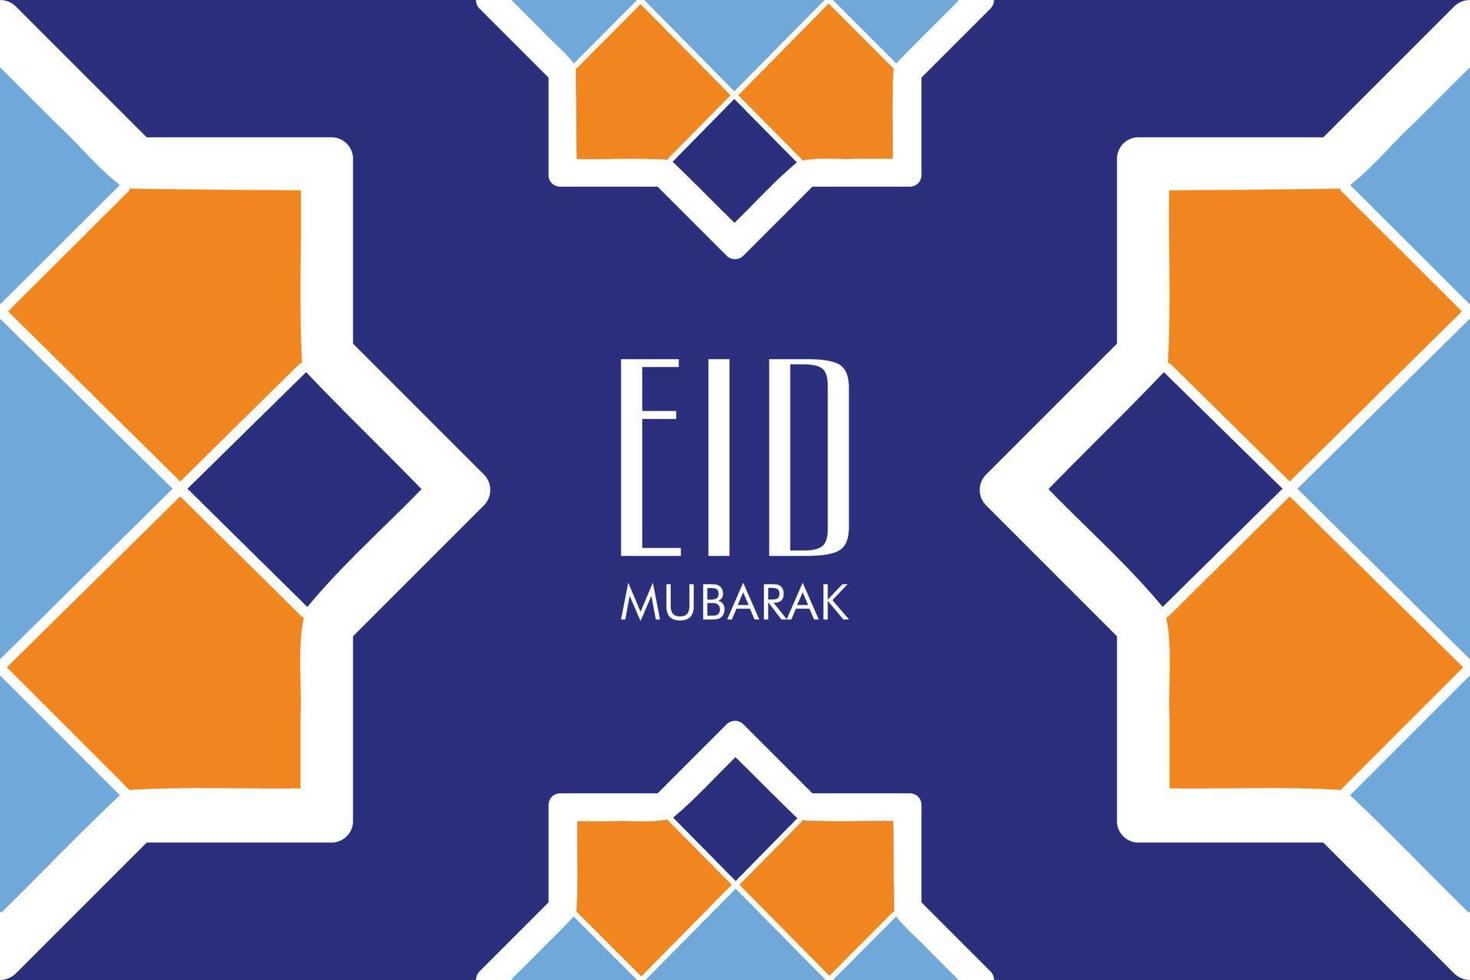 eid mubarak vektorillustrationsfahne und social-media-post vektor